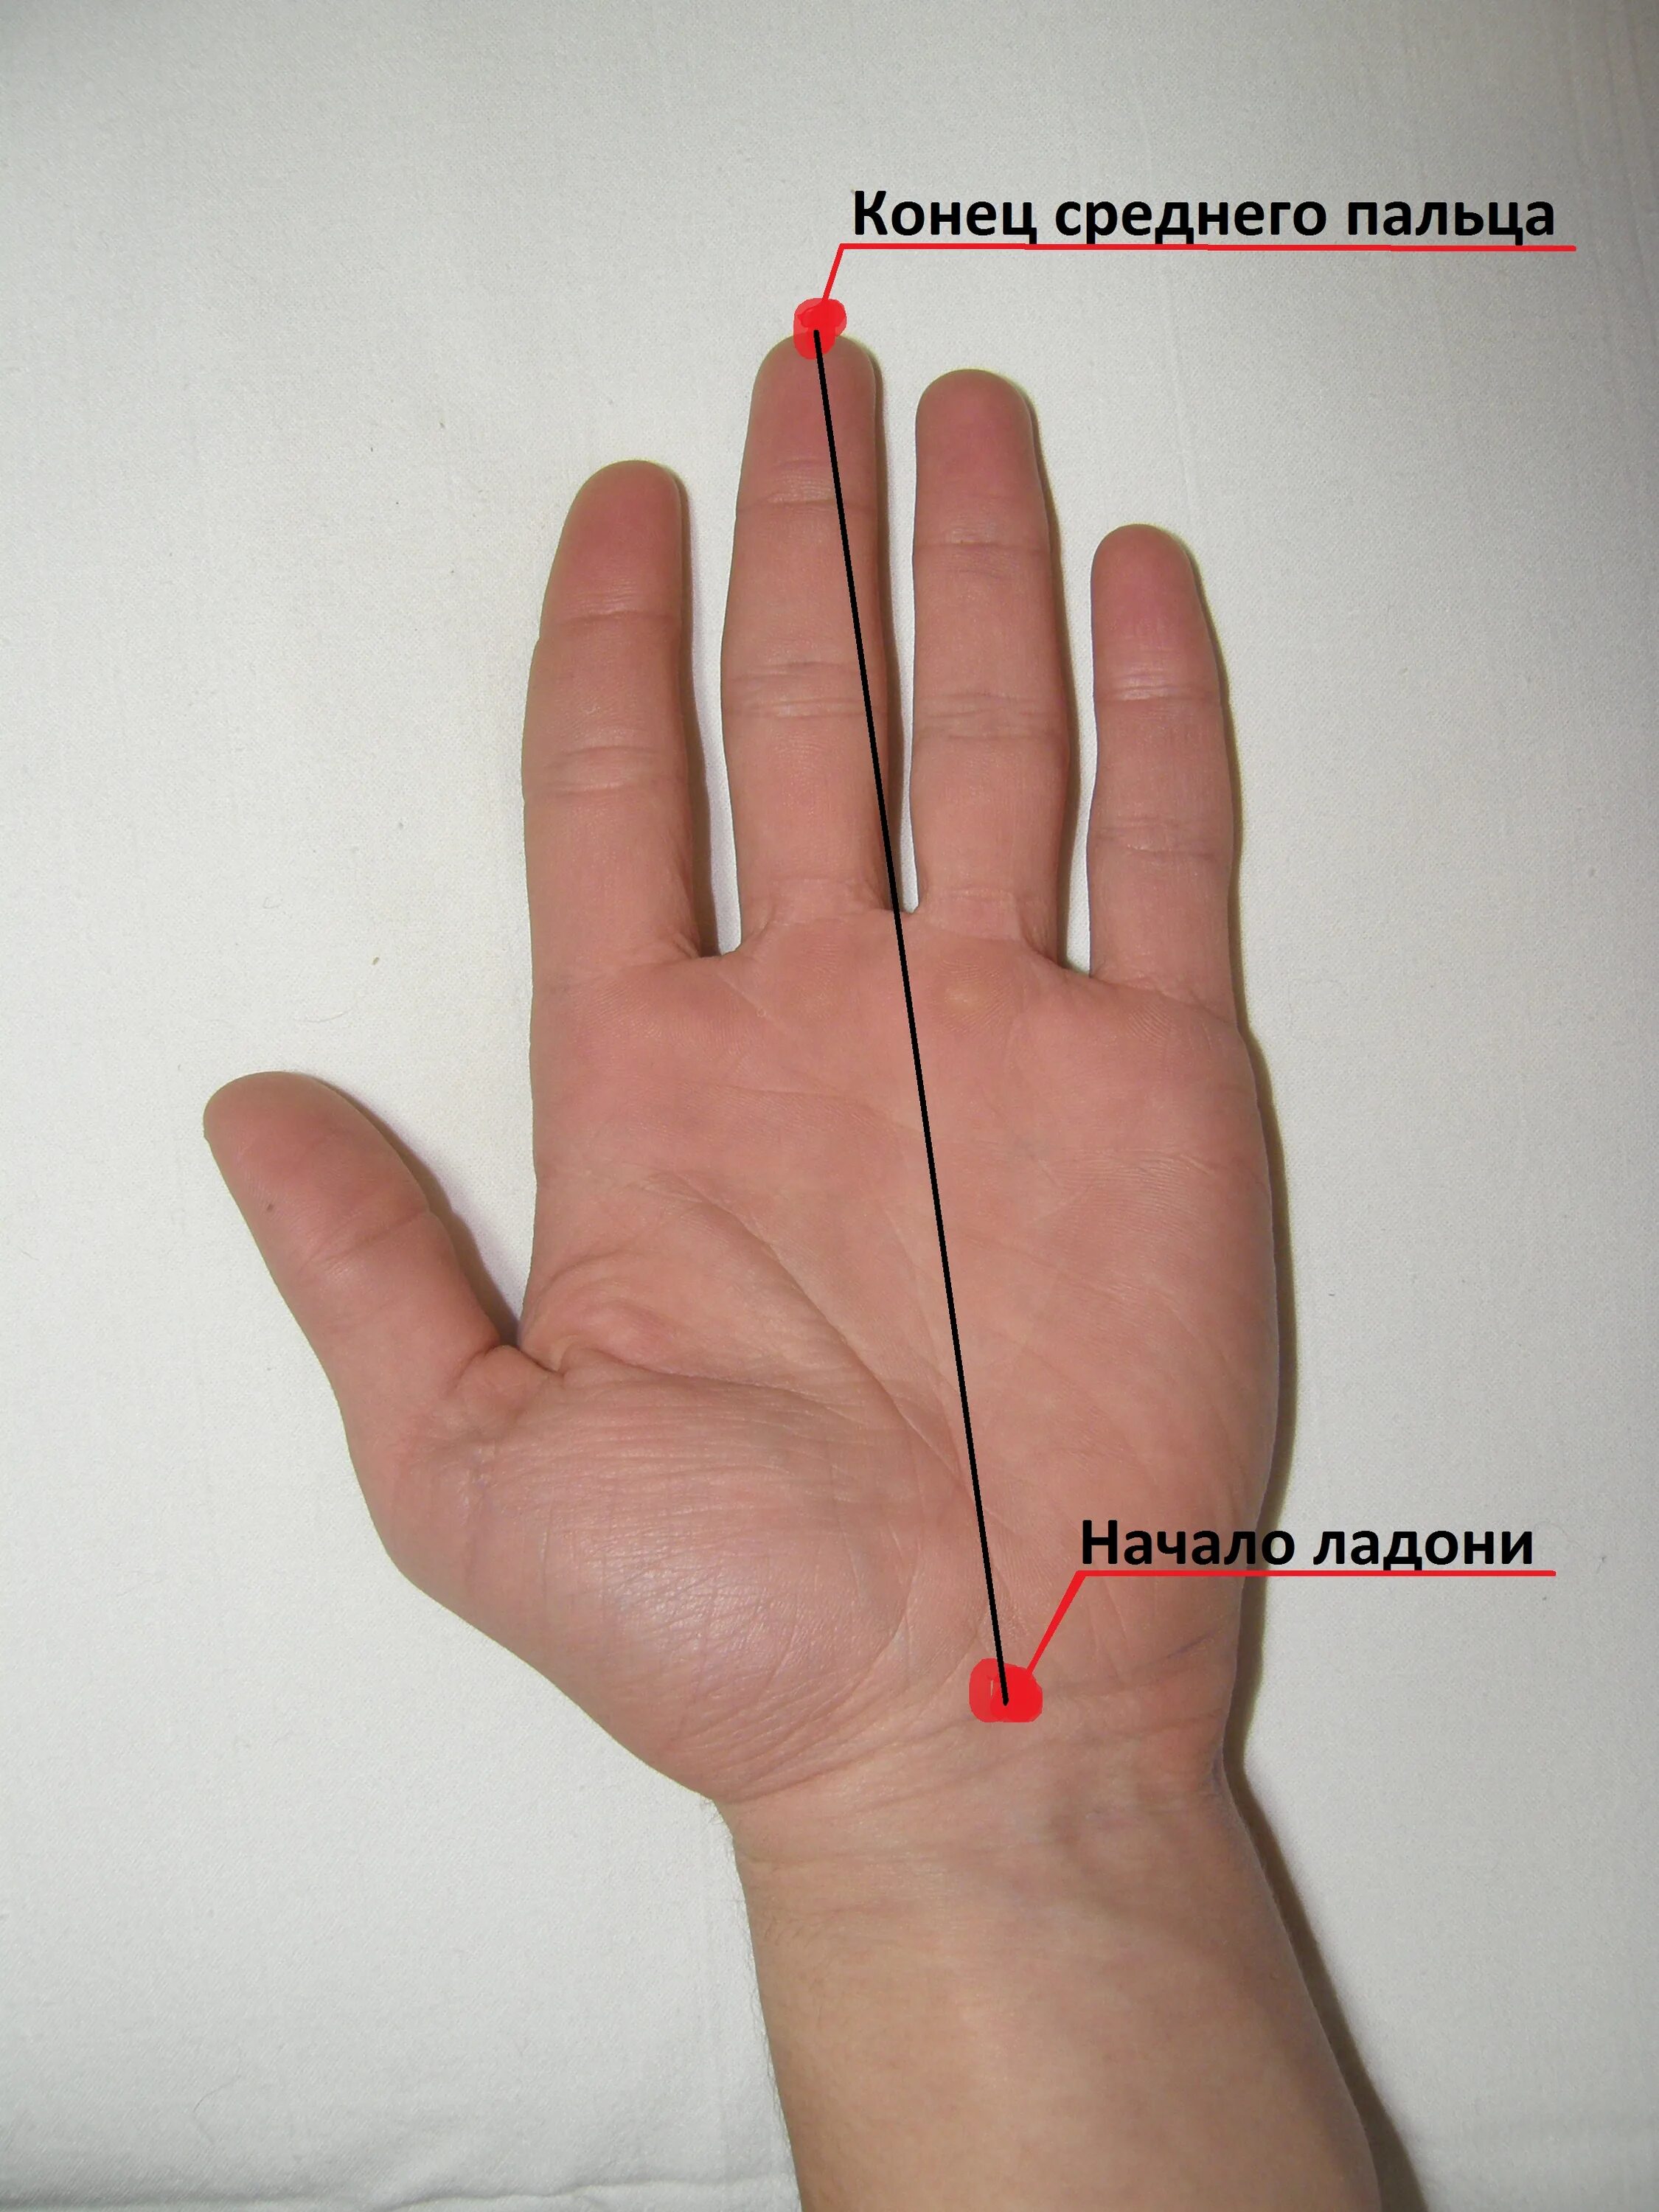 Сколько сантиметров рука. Размер члена по размеру ладони. От запястья до среднего пальца. Средний палец на руке. Длина от запястья до кончика среднего пальца.